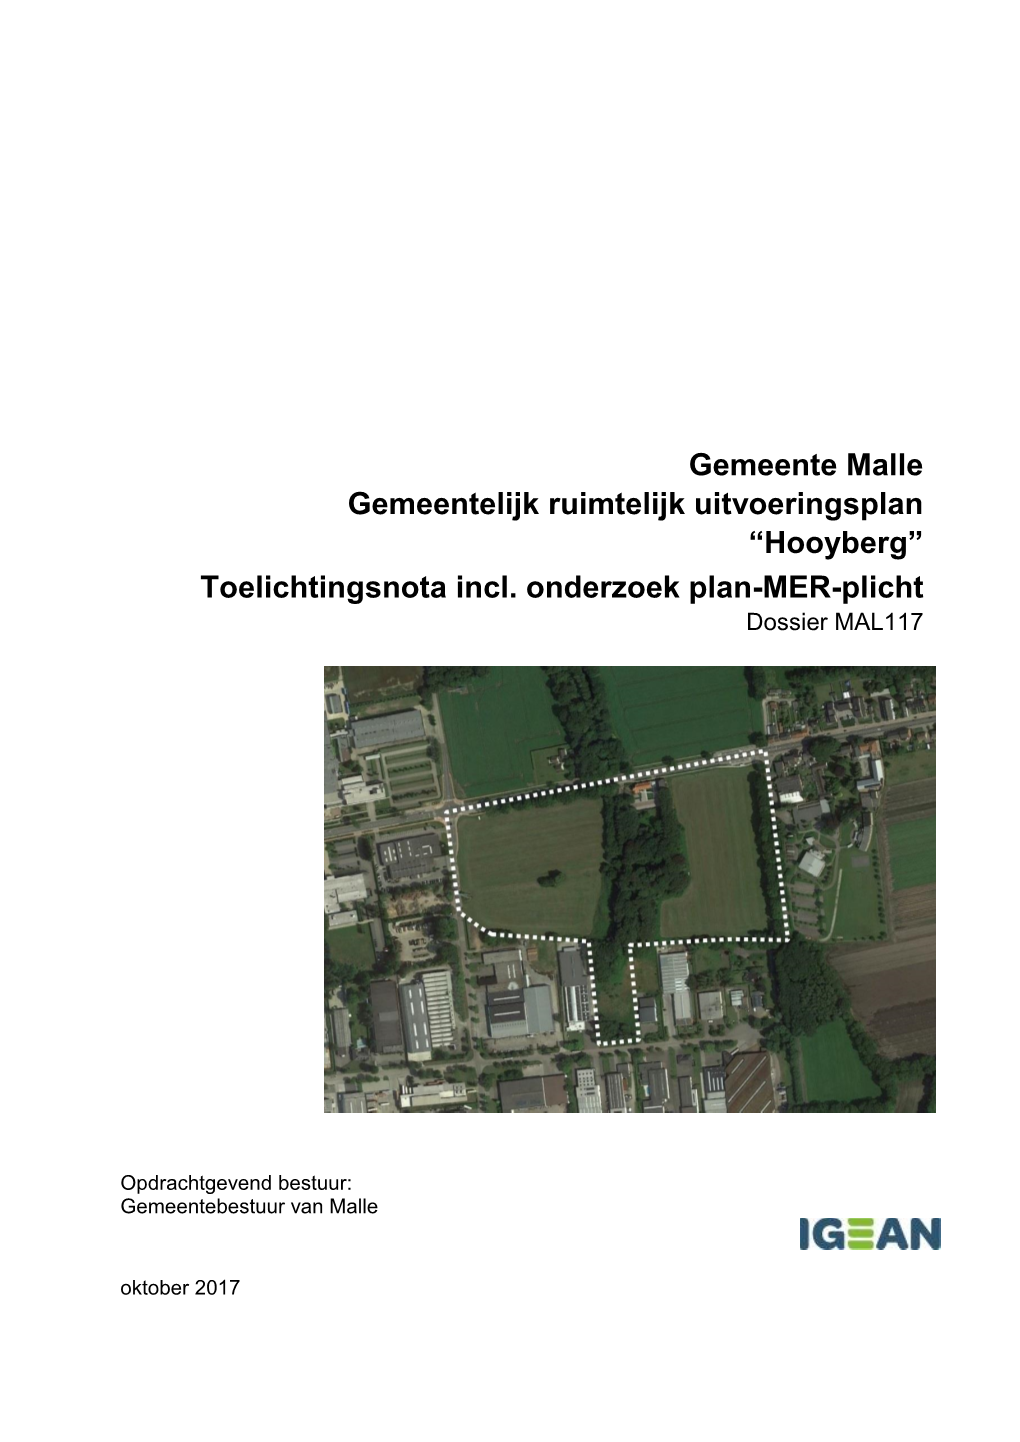 Gemeente Malle Gemeentelijk Ruimtelijk Uitvoeringsplan “Hooyberg” Toelichtingsnota Incl